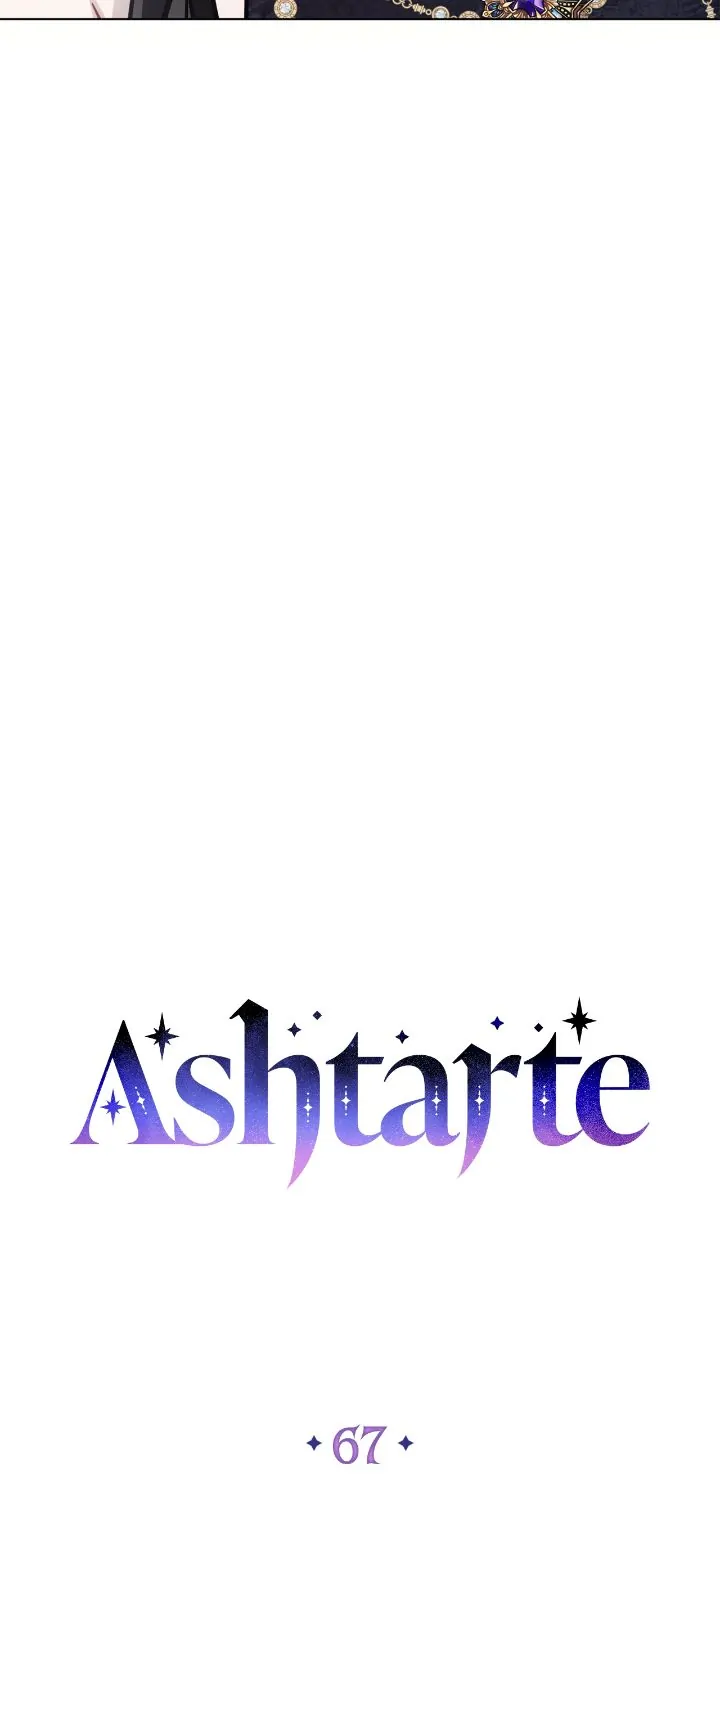 Ashtarte chapter 67